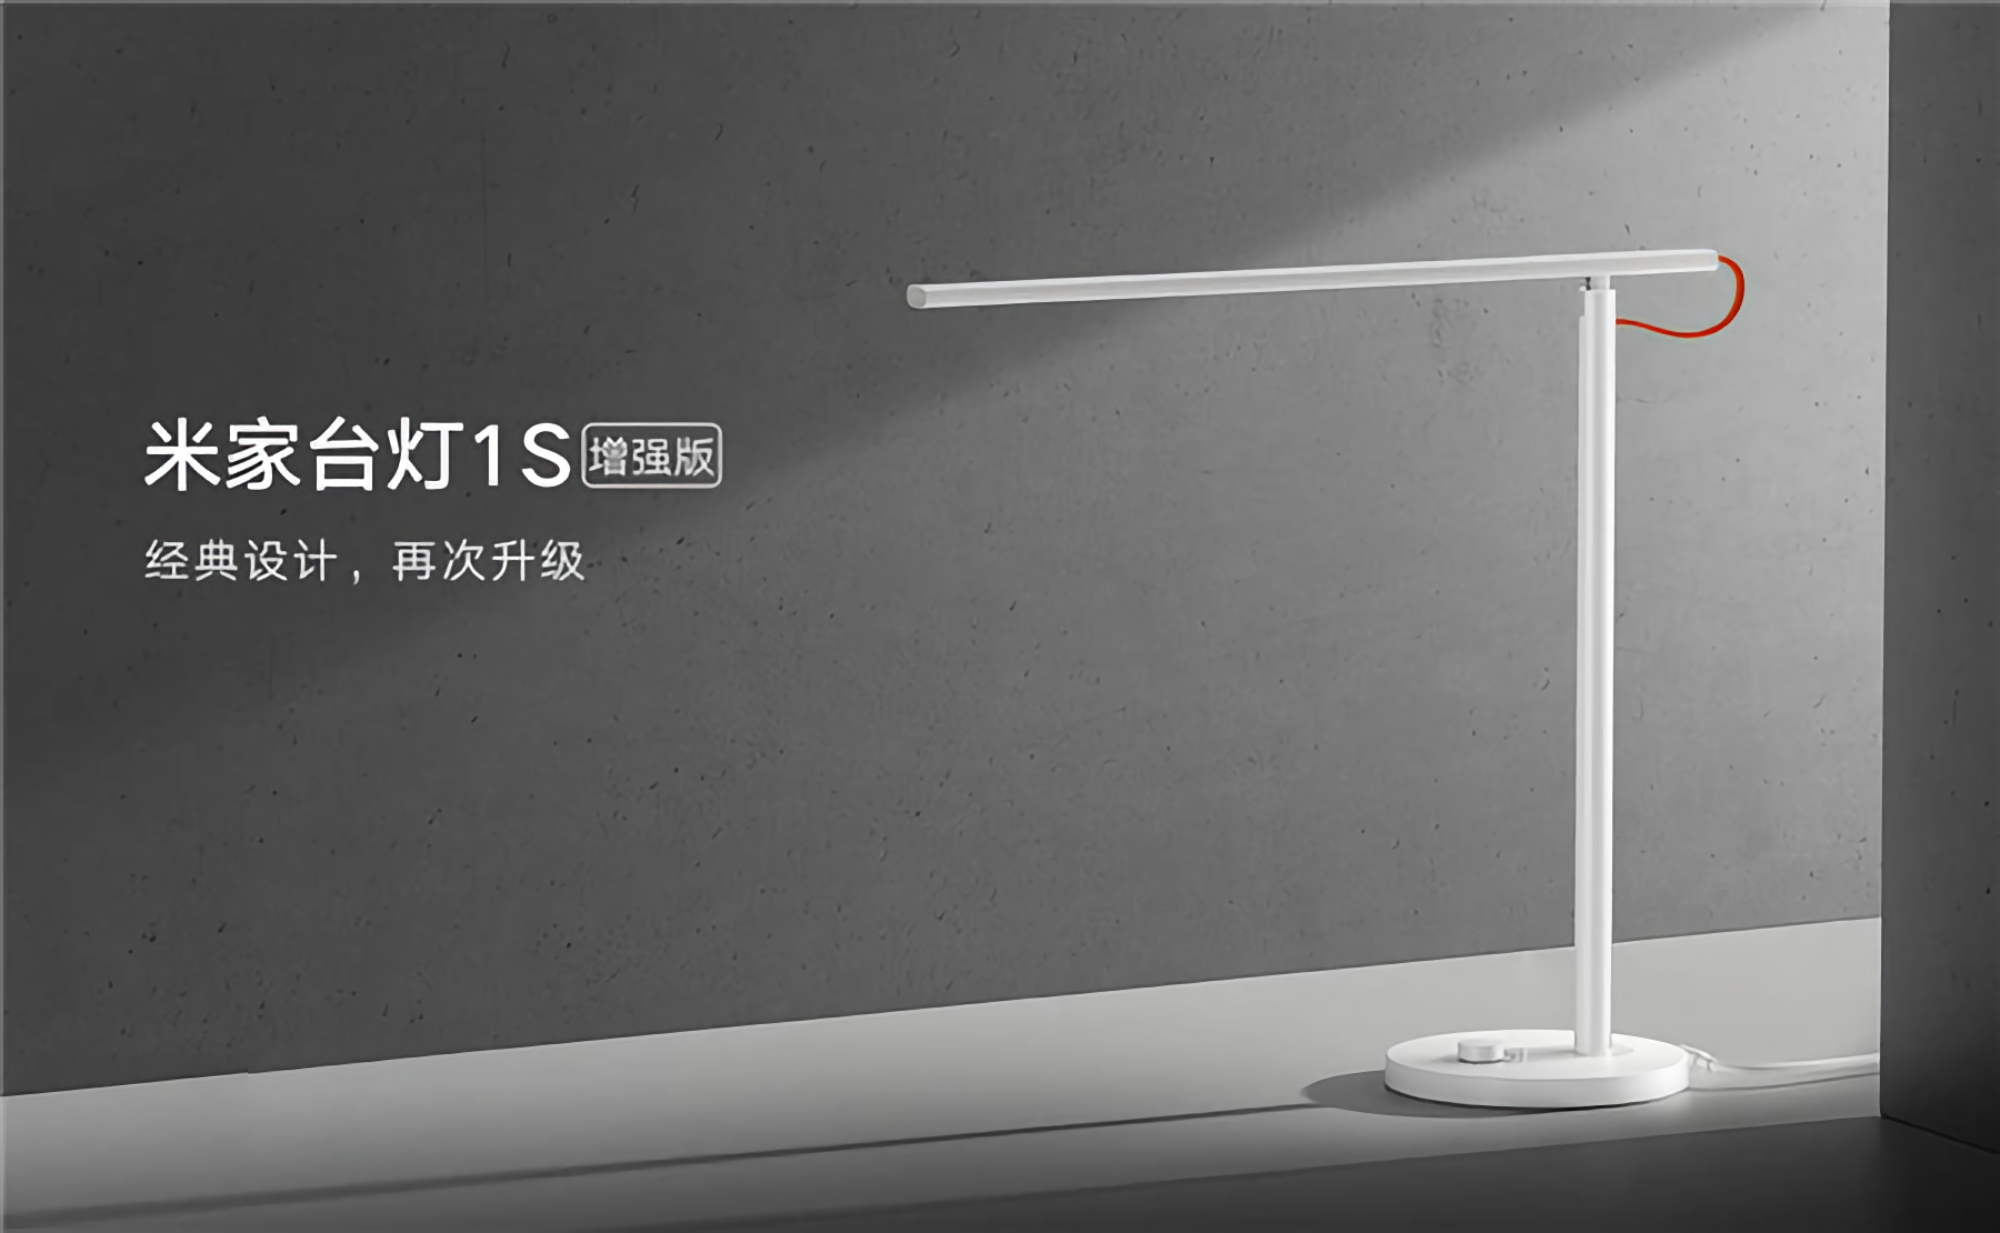 Xiaomi wprowadziło inteligentną lampę MiJia Desk Lamp 1S Enhanced z nowym modułem LED i ceną 30 USD